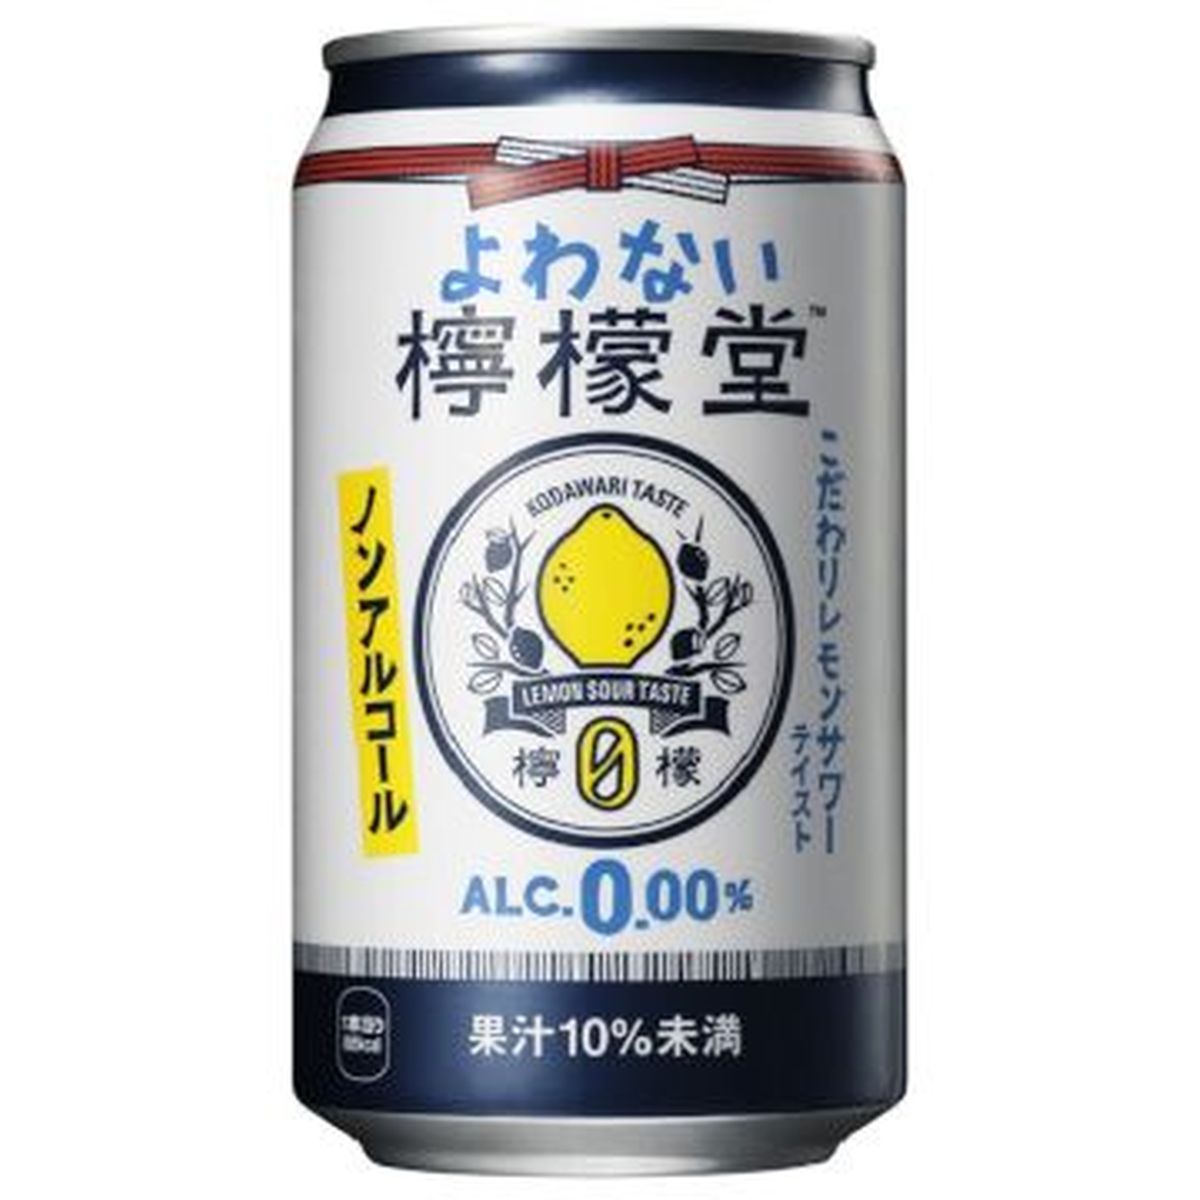 【24個入リ】コカコーラ ヨワナイ檸檬堂 缶 350ml